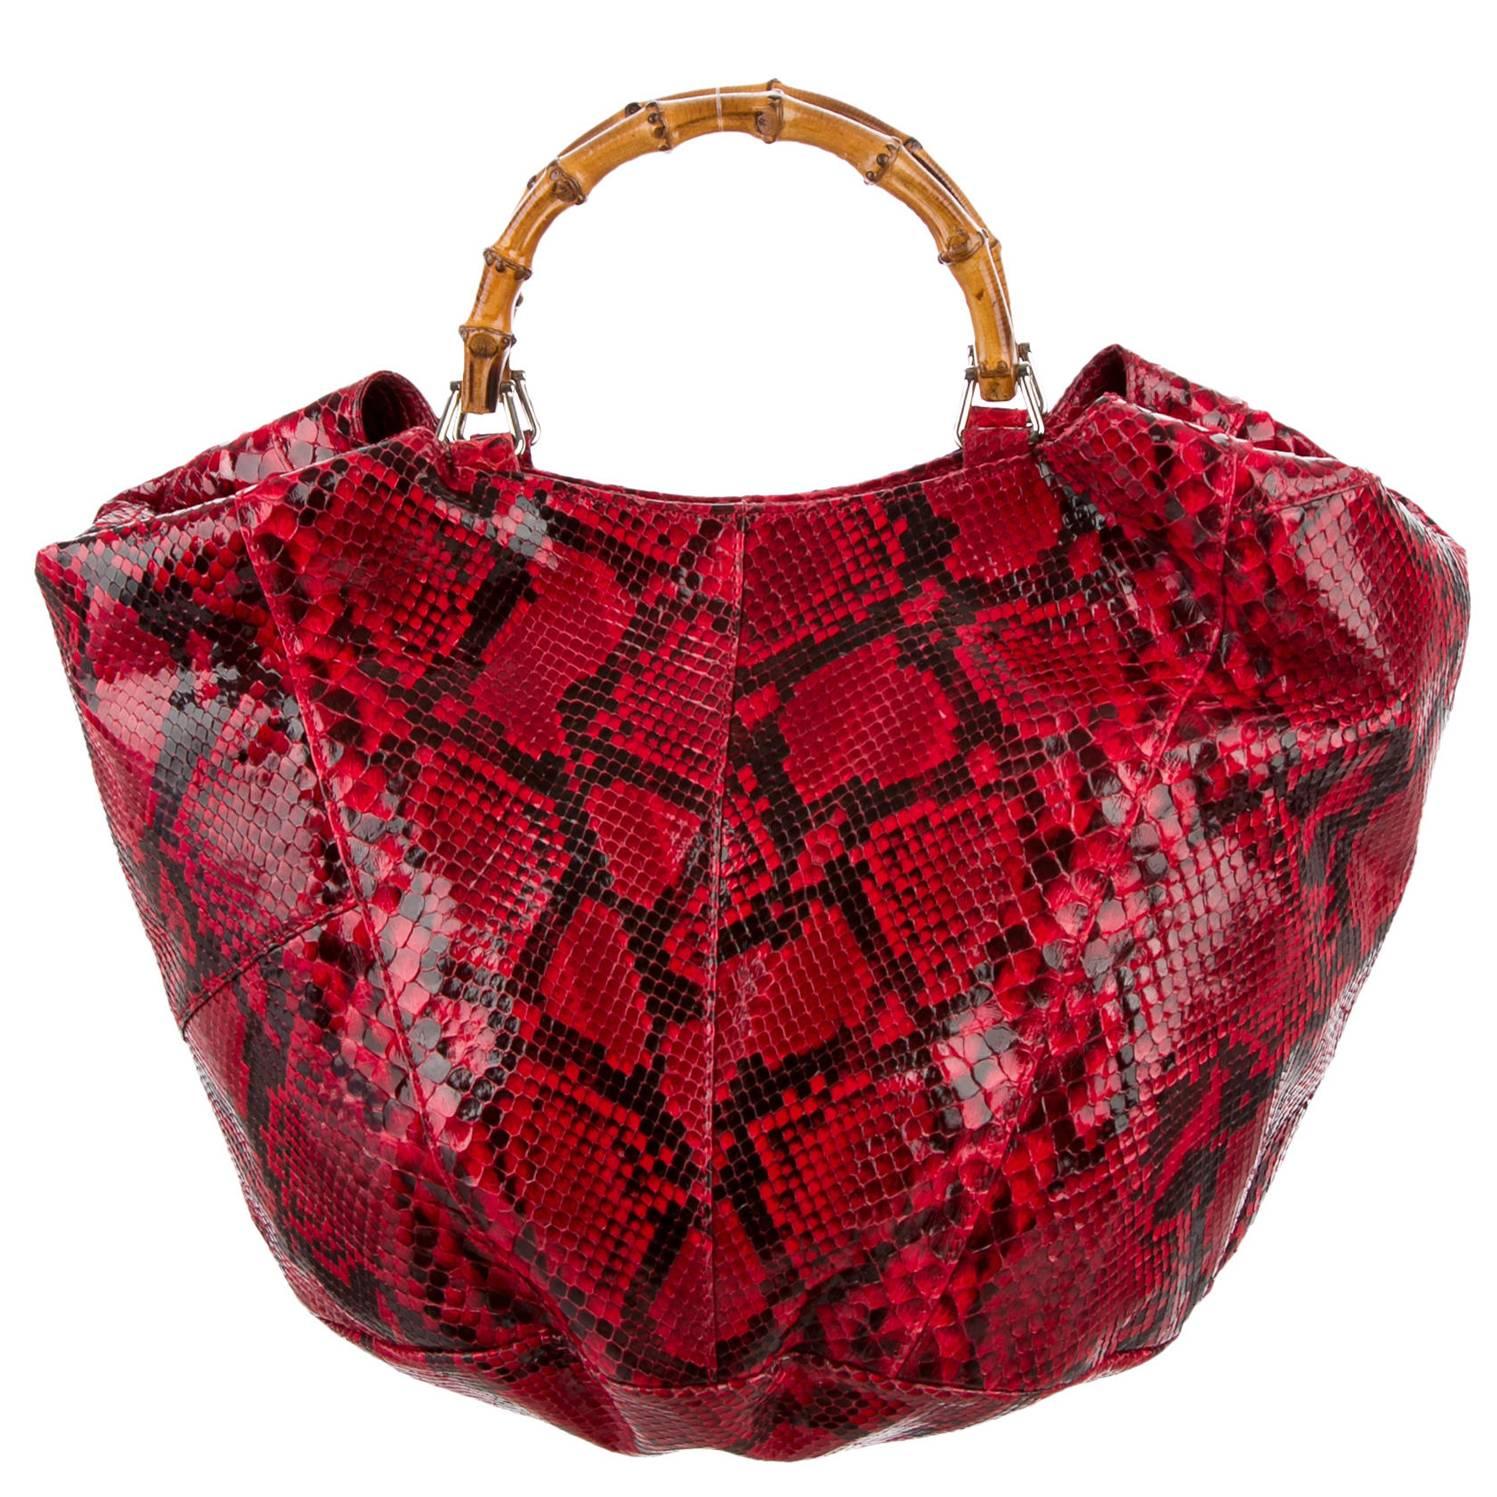 Énorme sac de campagne publicitaire Tom Ford Gucci en cuir python rouge pour le défilé printemps-été 1996 !